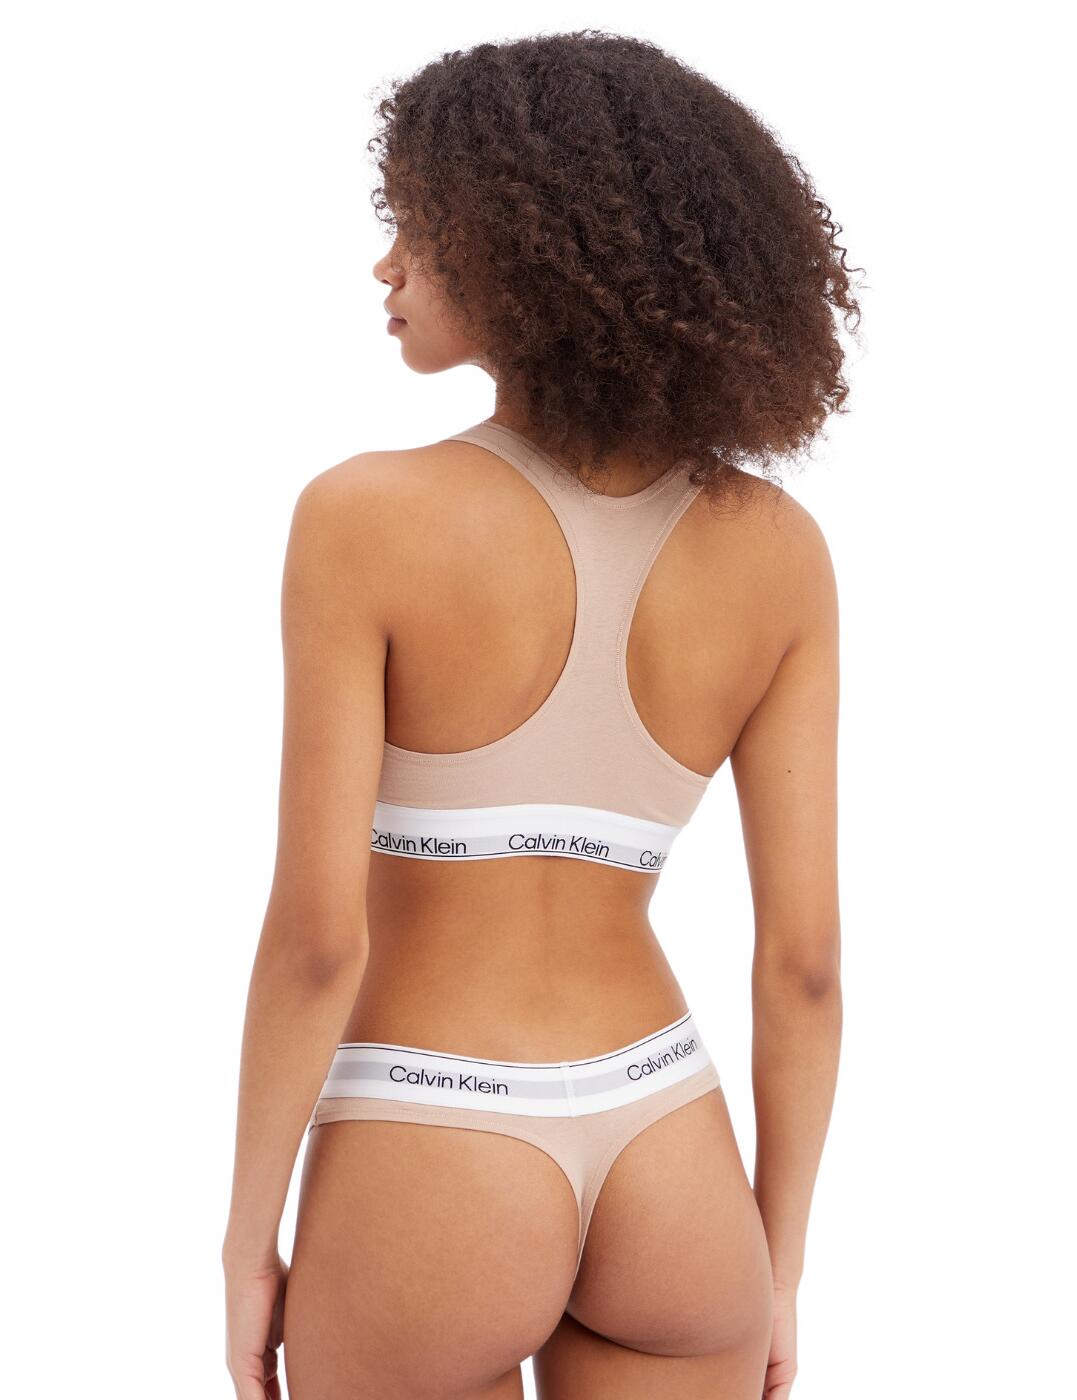 Buy Calvin Klein - Women's Cotton Bralette and Briefs Underwear Set Online  at desertcartOMAN